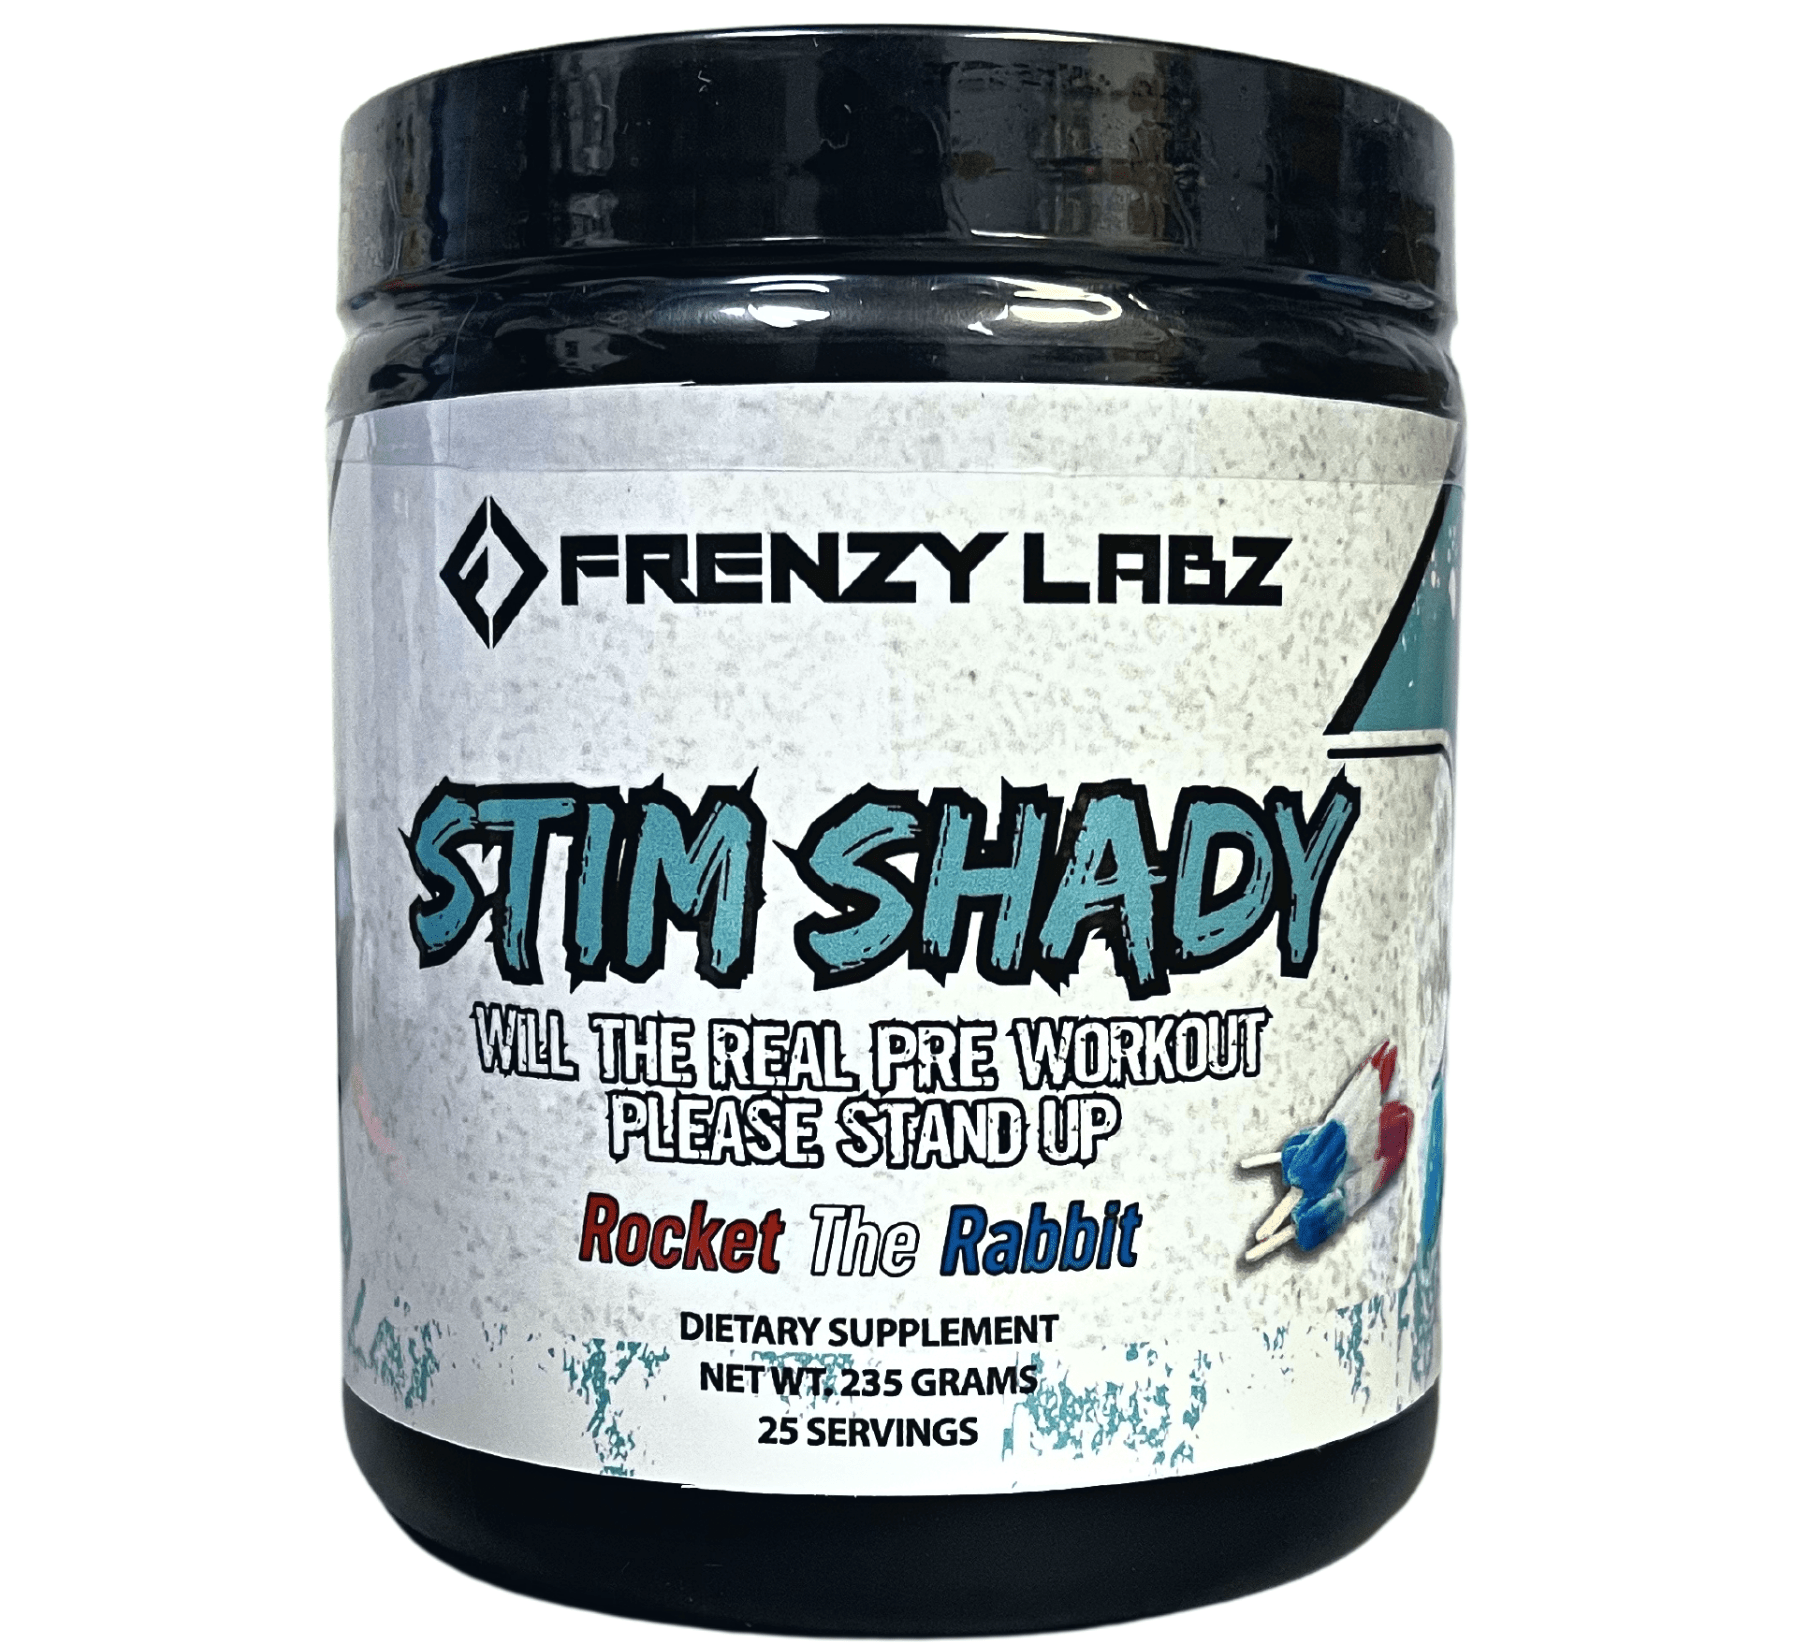 Frenzy Labz Stim Shady - Bemoxie Supplements